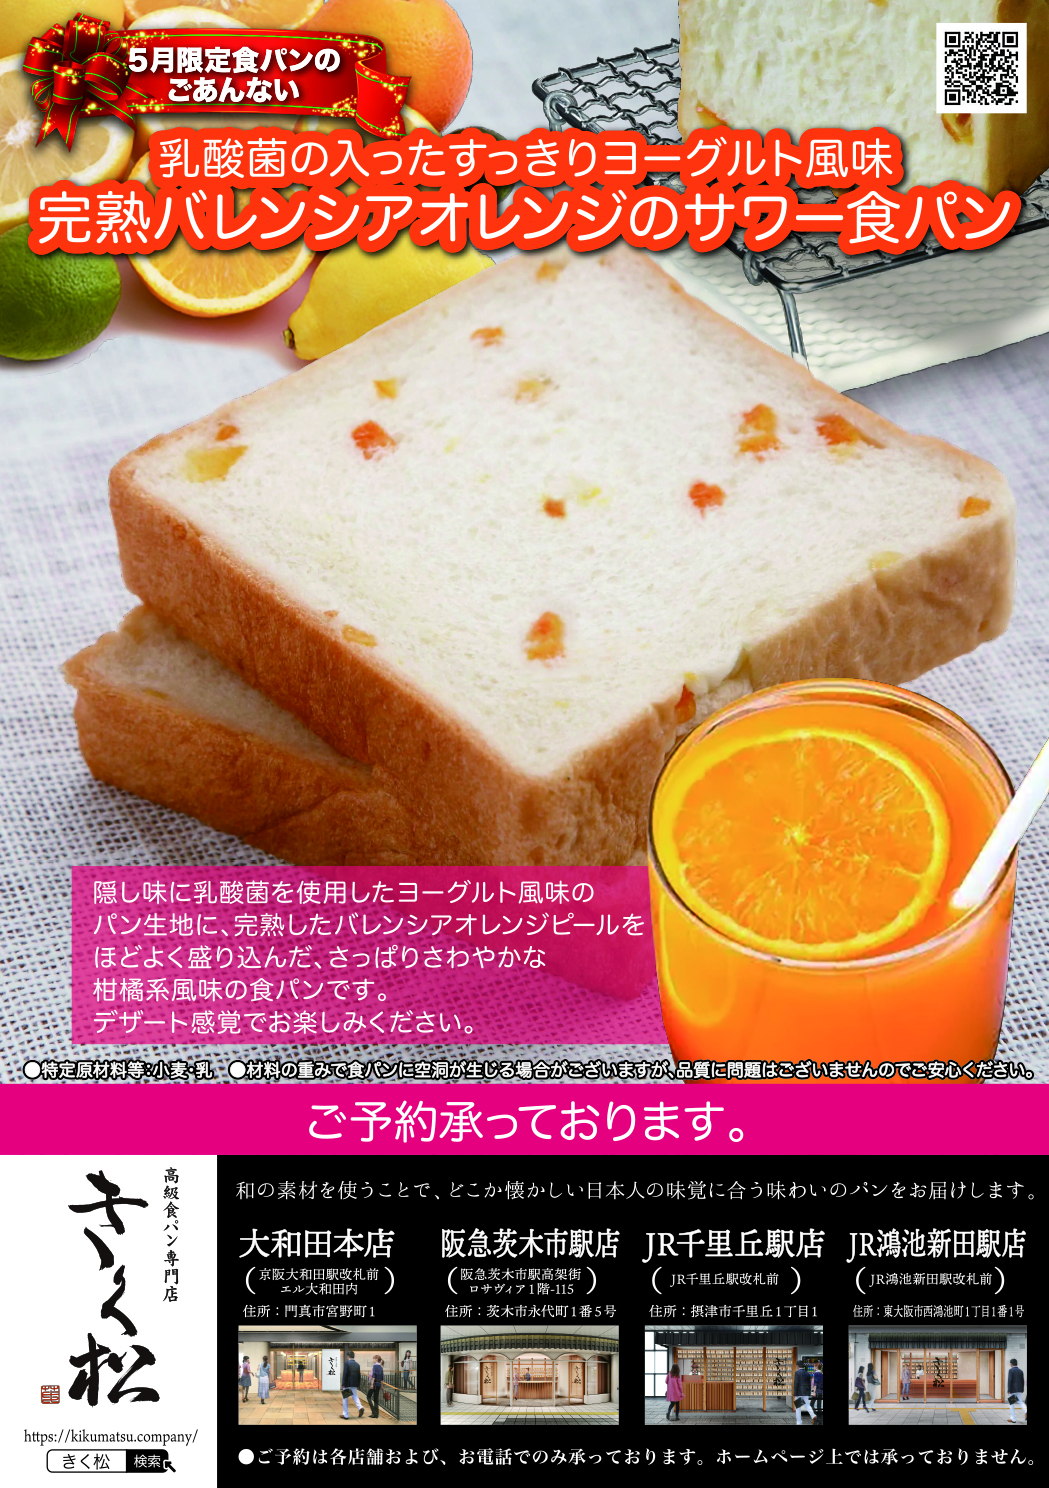 5月の限定食パンは【乳酸菌の入ったすっきりヨーグルト風味 完熟バレンシアオレンジのサワー食パン】